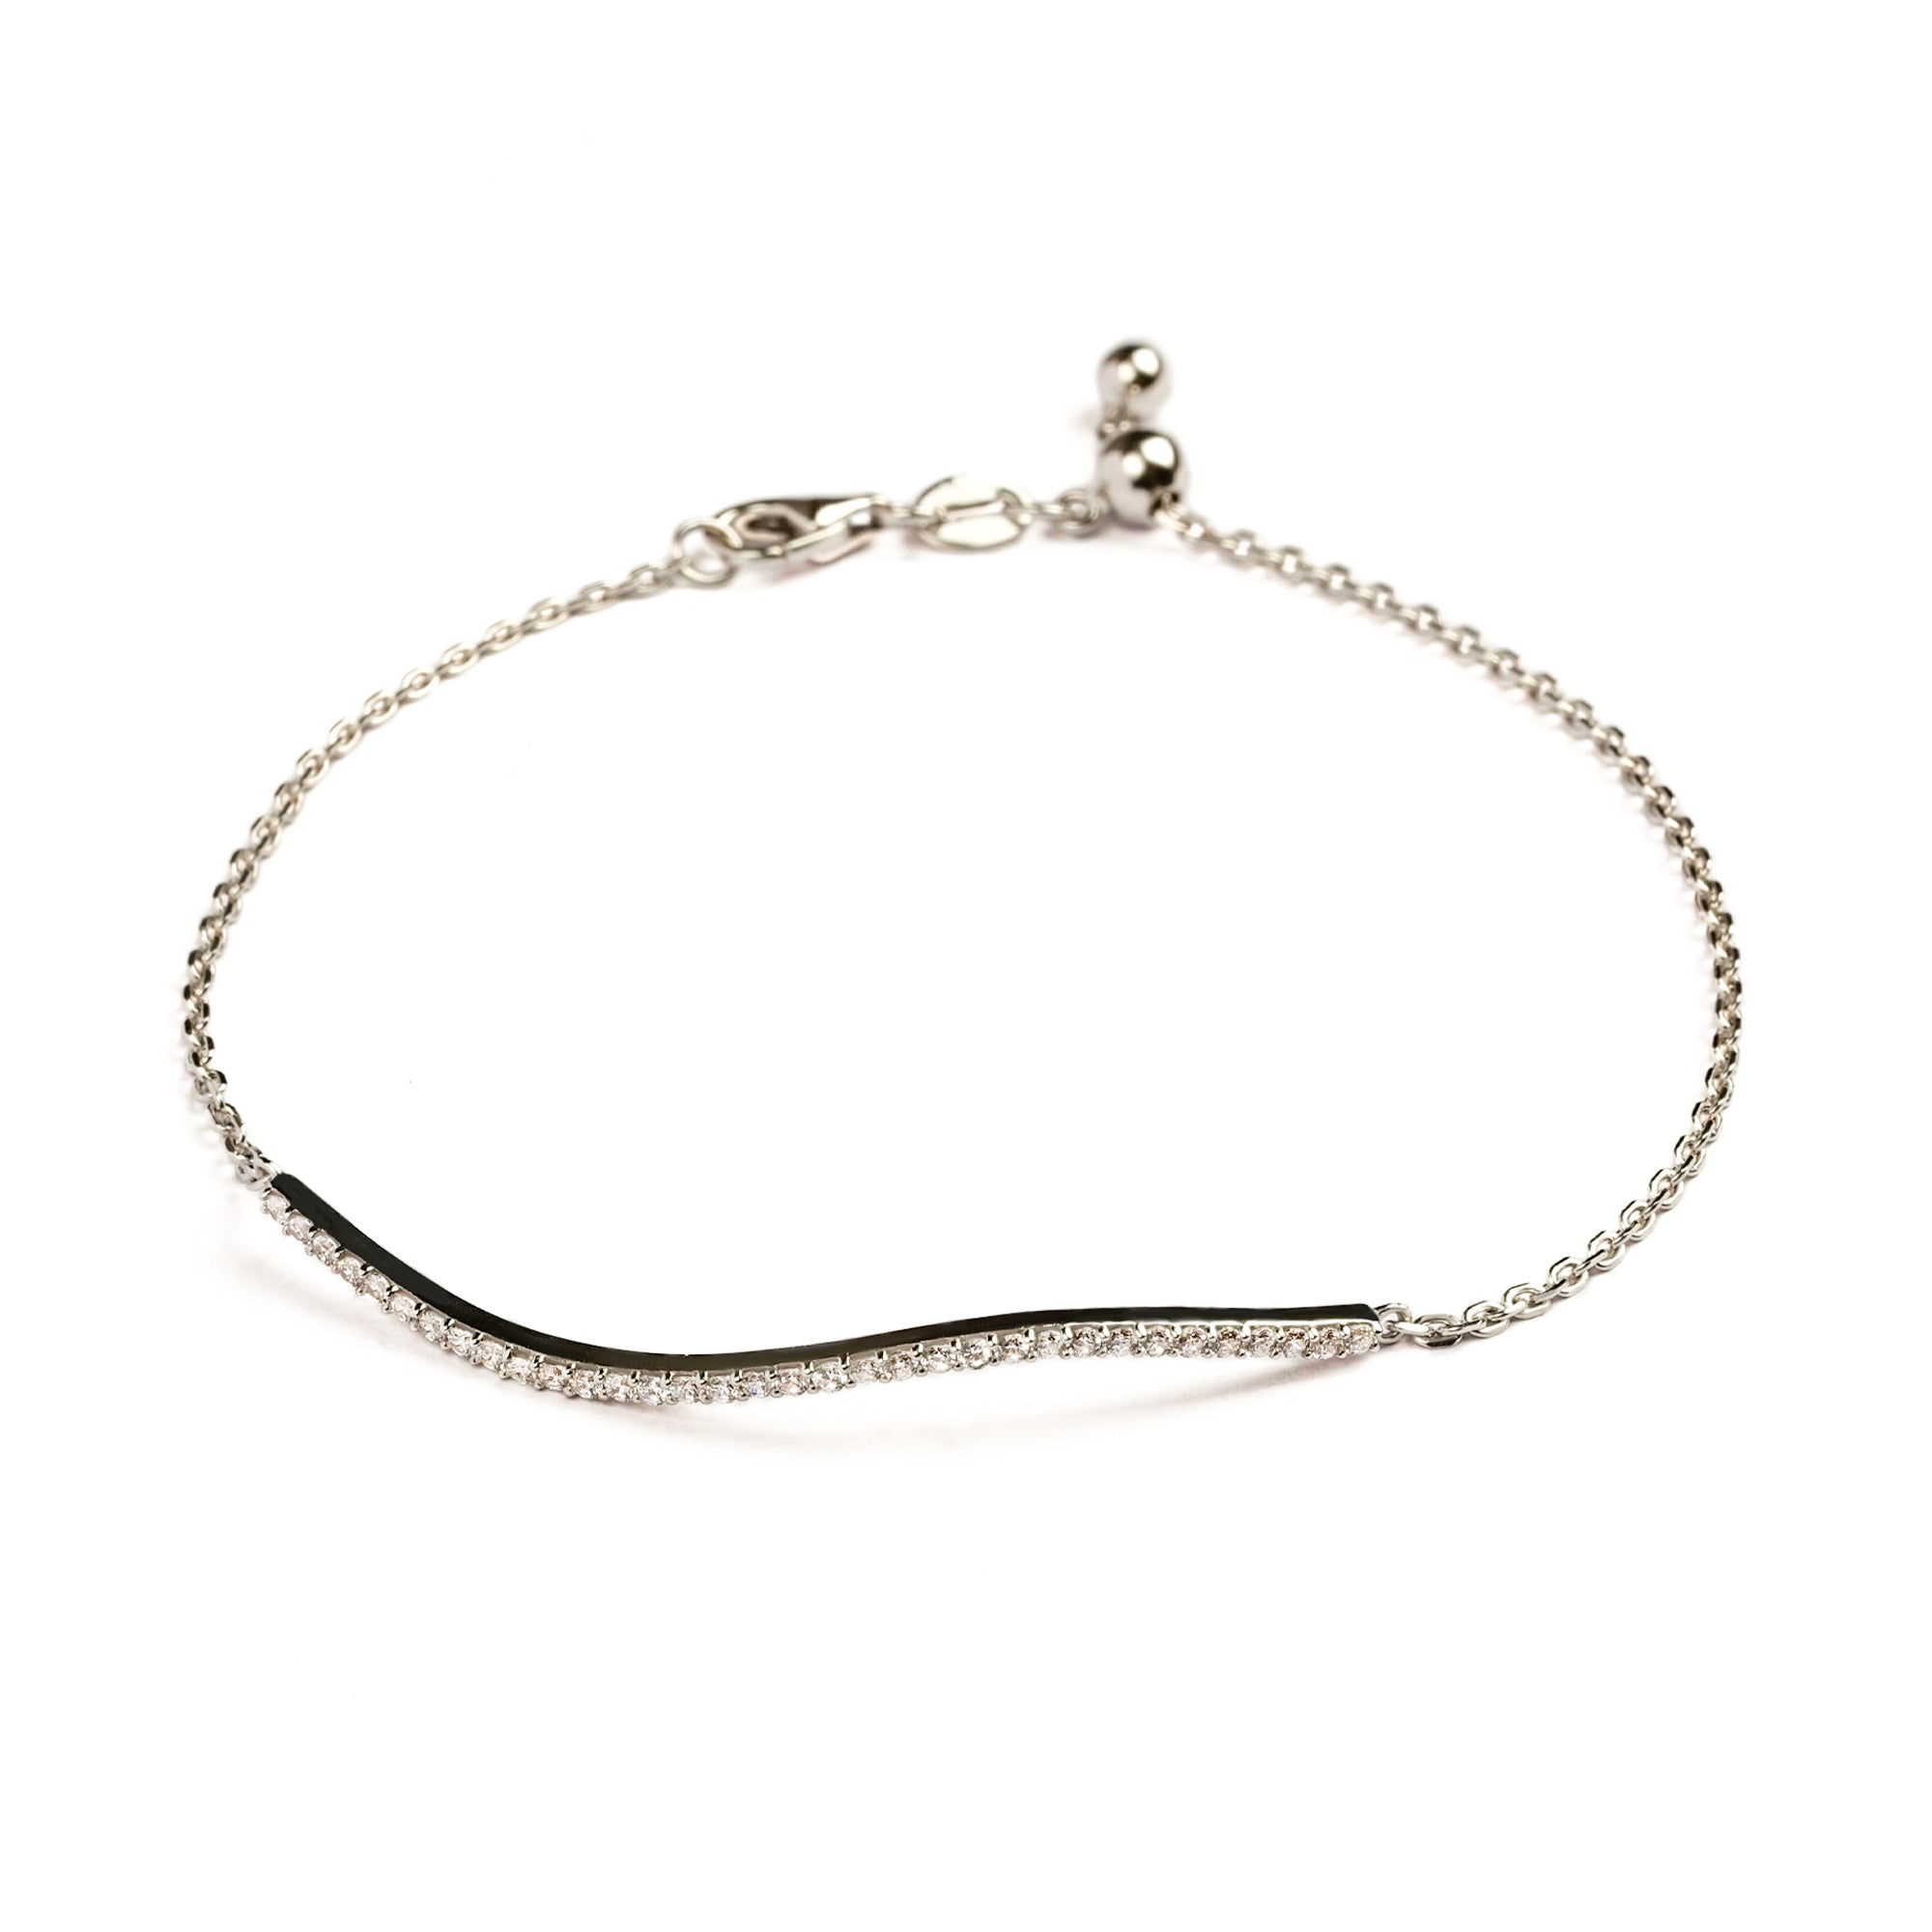 Darla Gold Bracelet - Dazzling Juene - Juene Jewelry